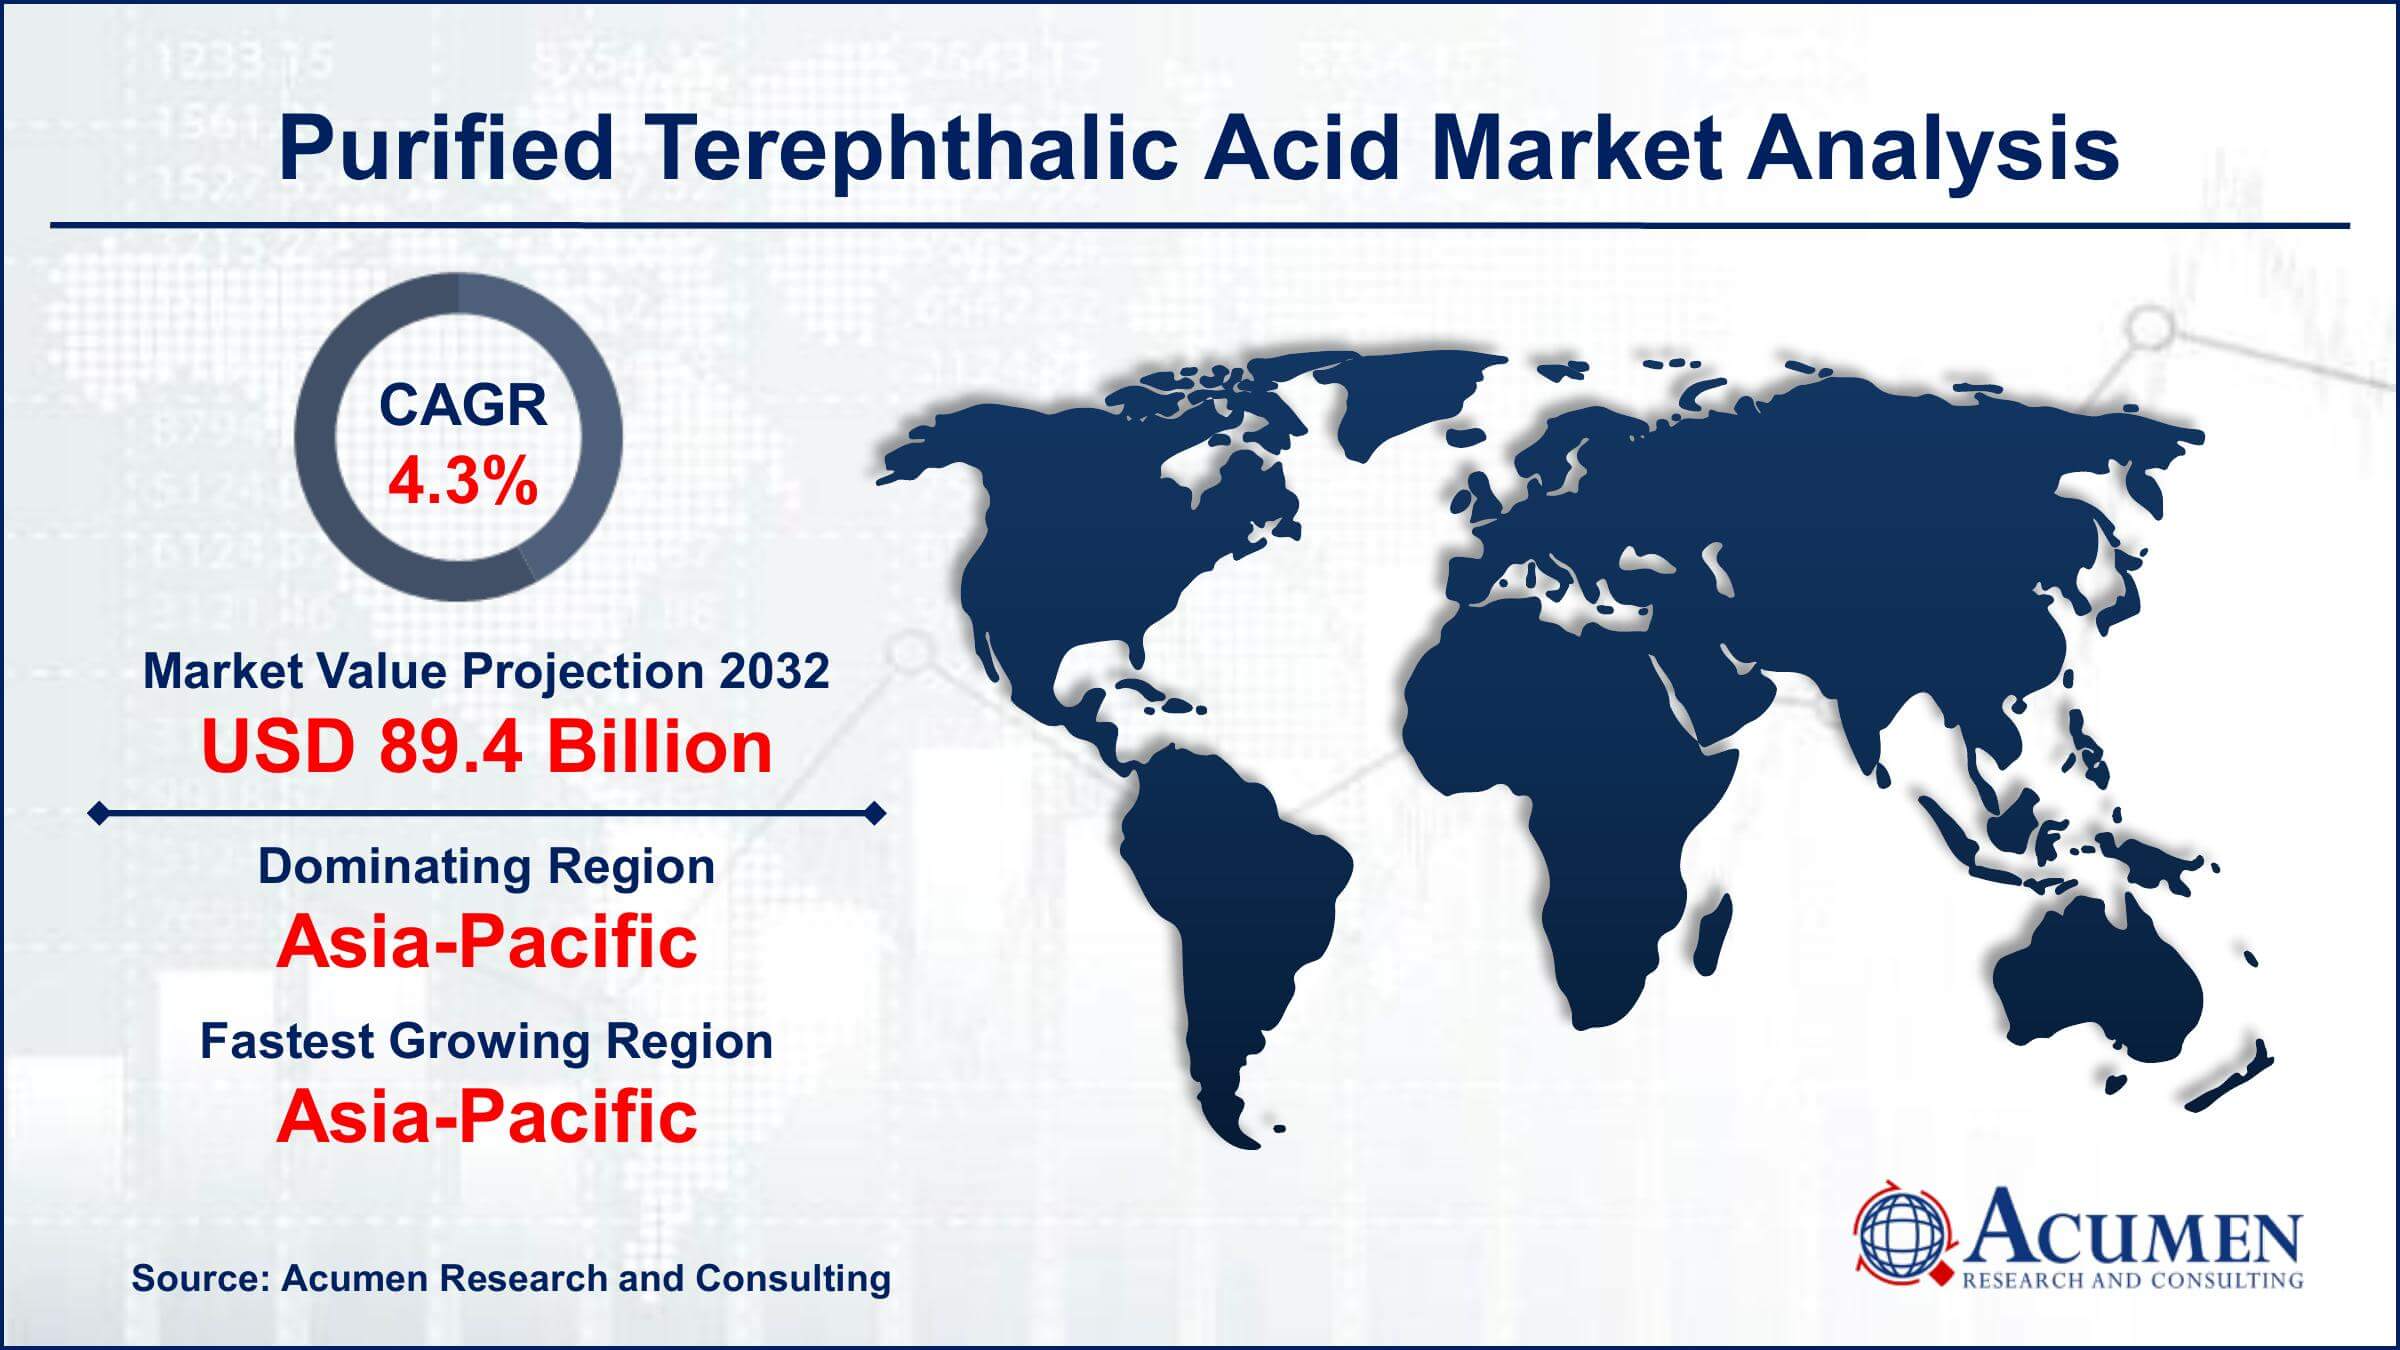 Global Purified Terephthalic Acid Market Trends